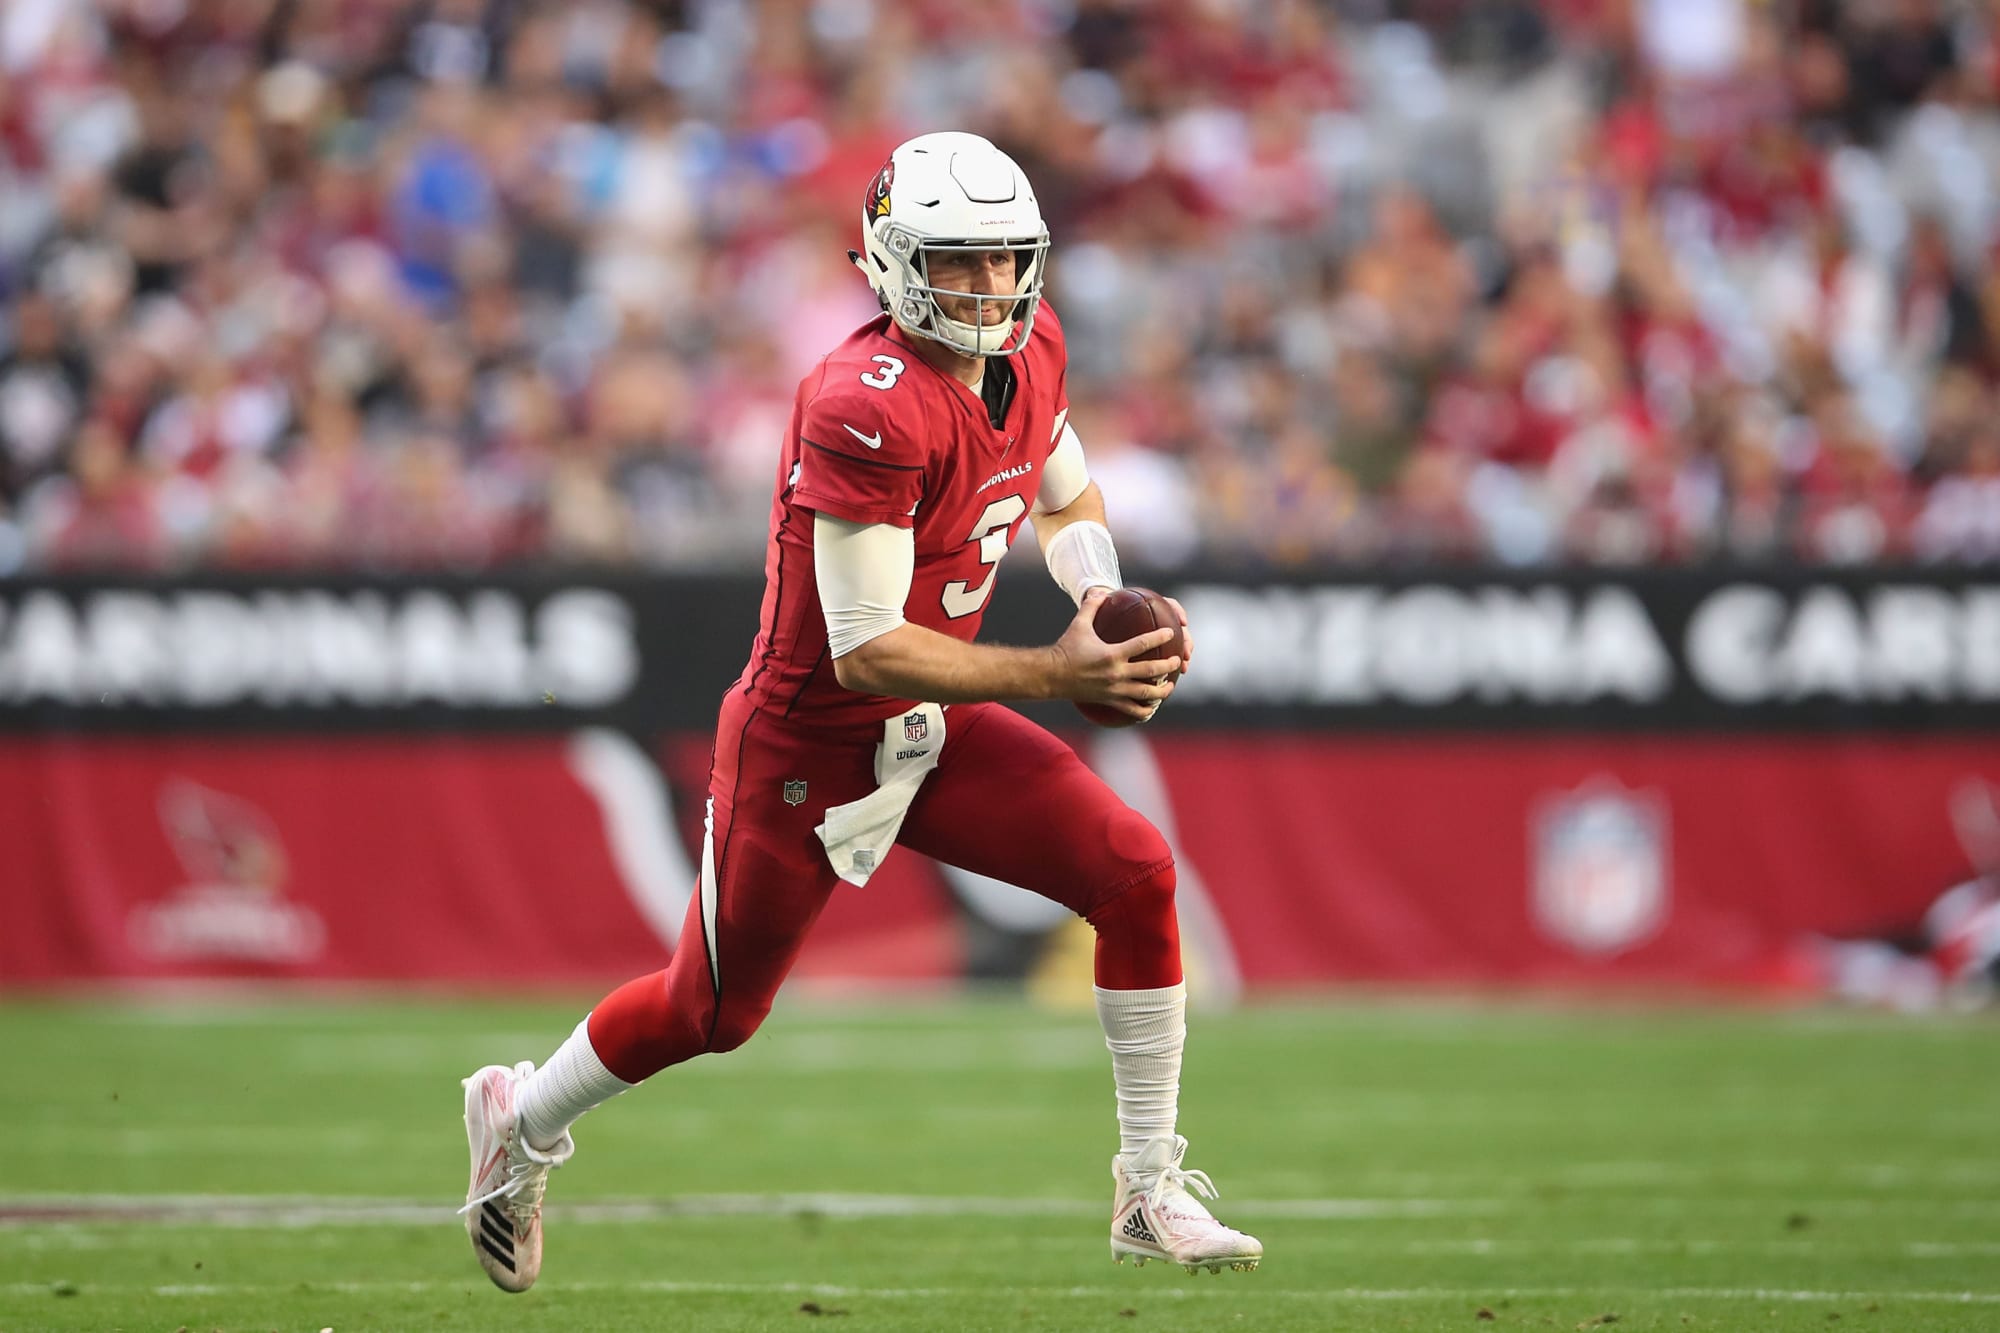 2019 NFL Draft order: Will Patriots pick Tom Brady's successor?